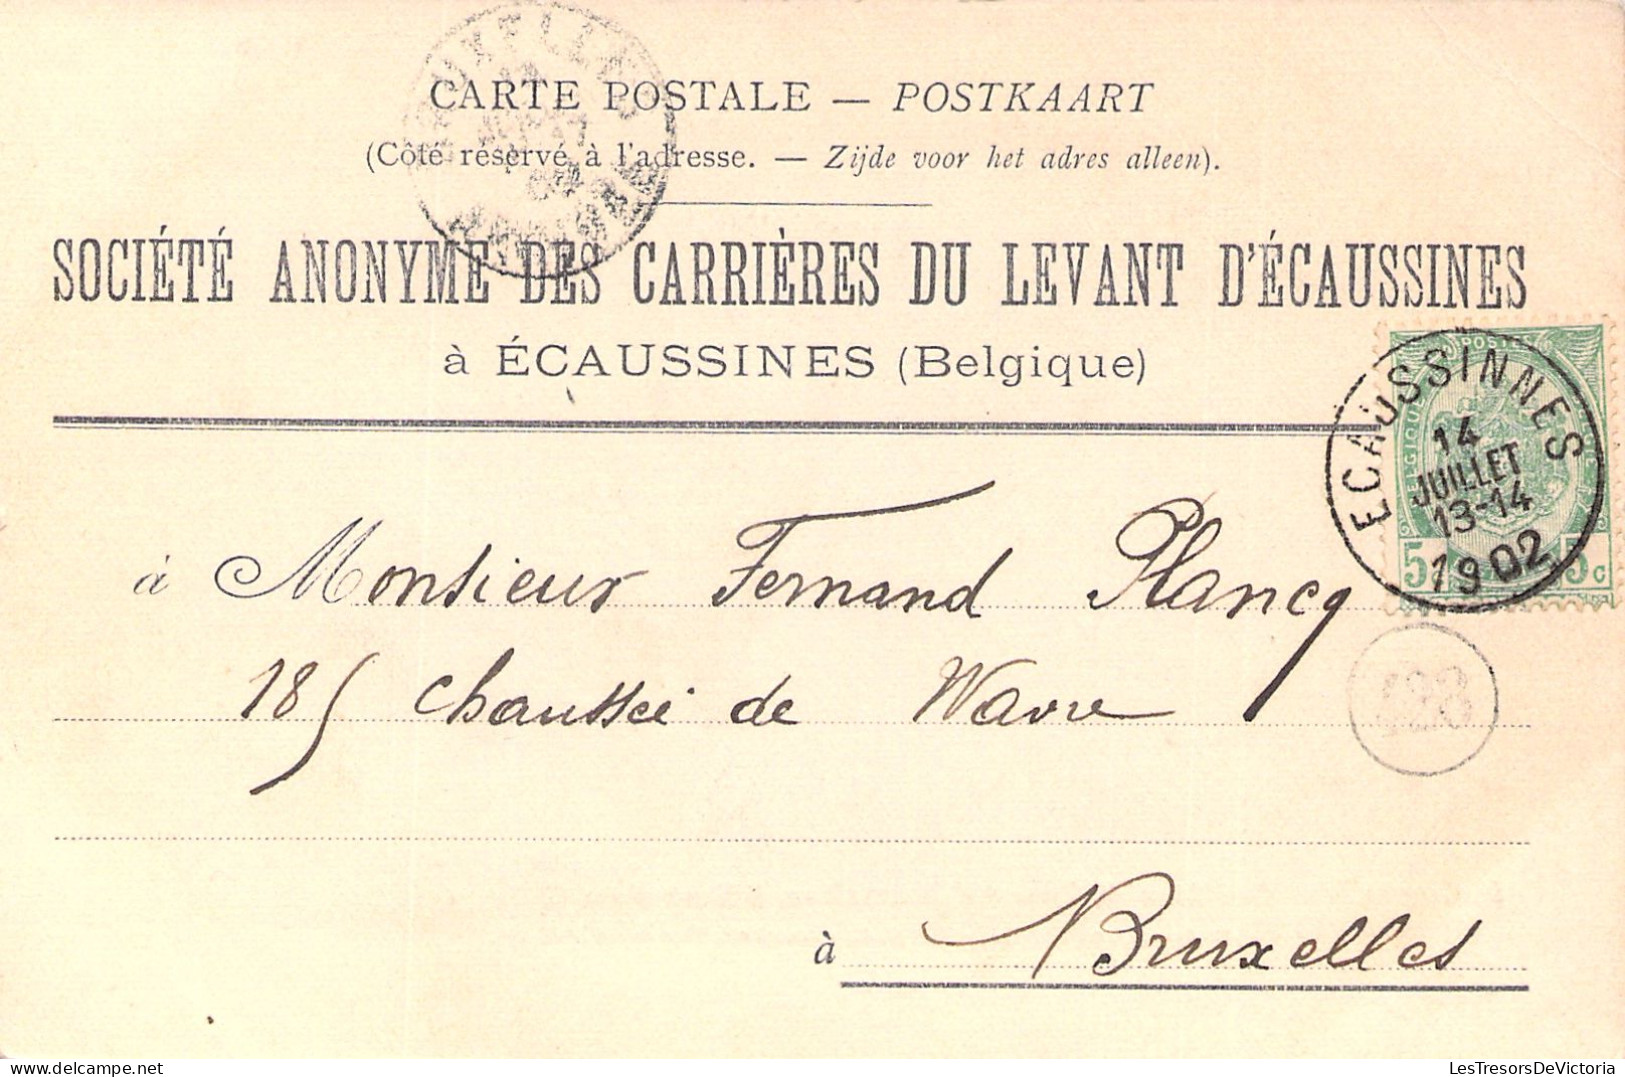 BELGIQUE - Soc Anon Des Carrieres Du Levant D'ecaussines - Grues D'extraction De Chantier - Carte Postale Ancienne - - Jurbise